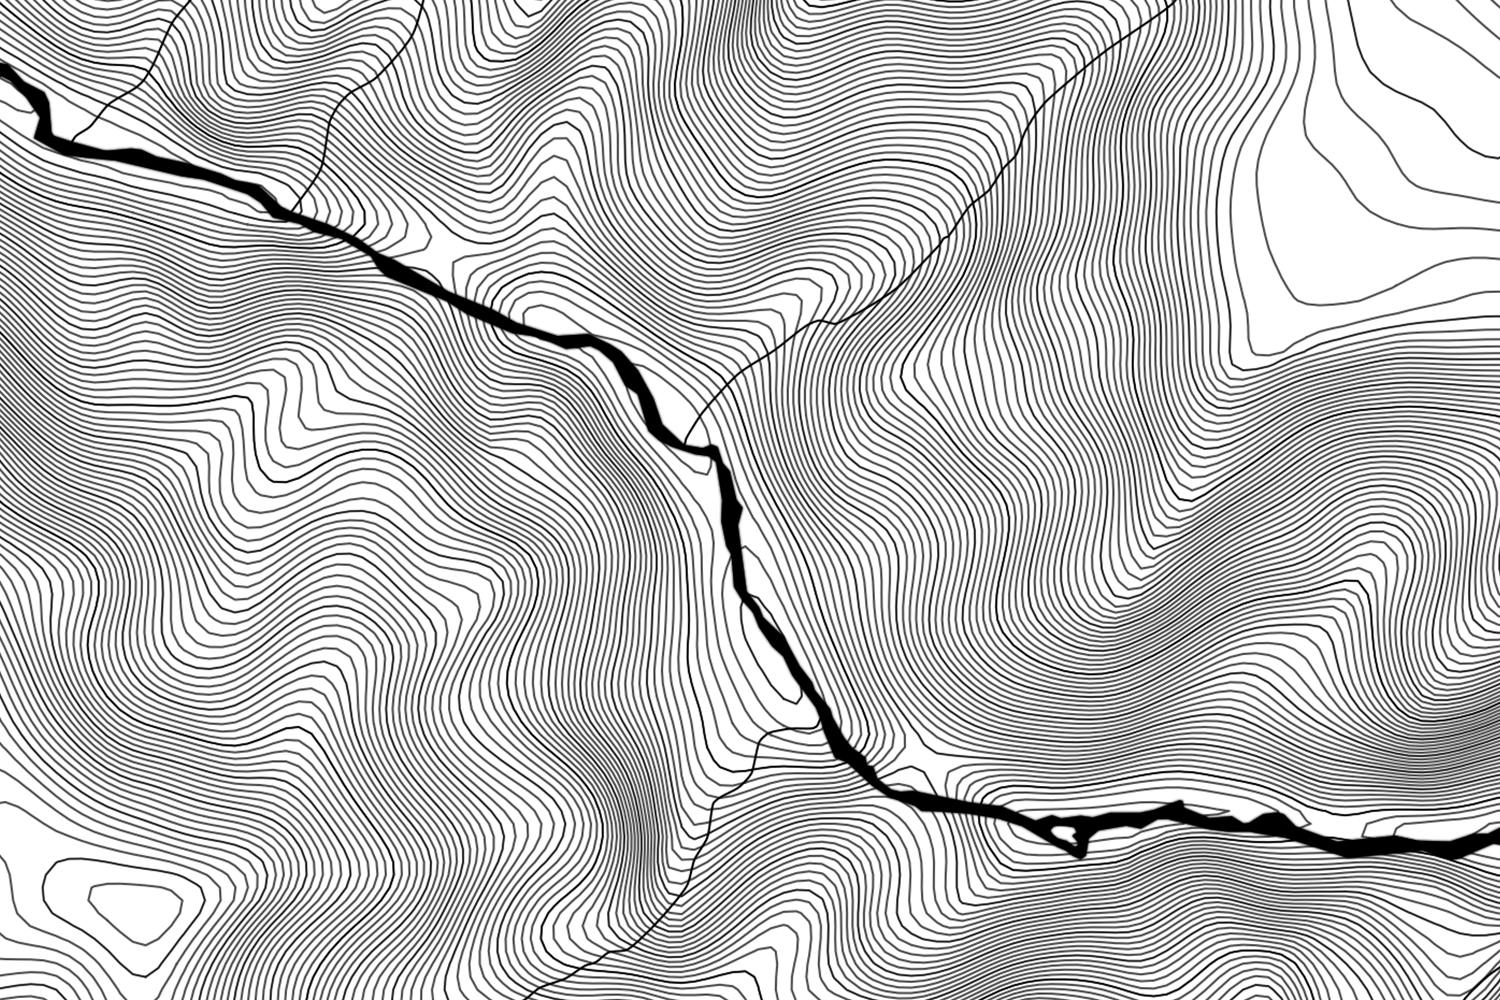 Topographic wallpaper engine. White topo. Текстура топографии. Обои topo Black. Topography обои.